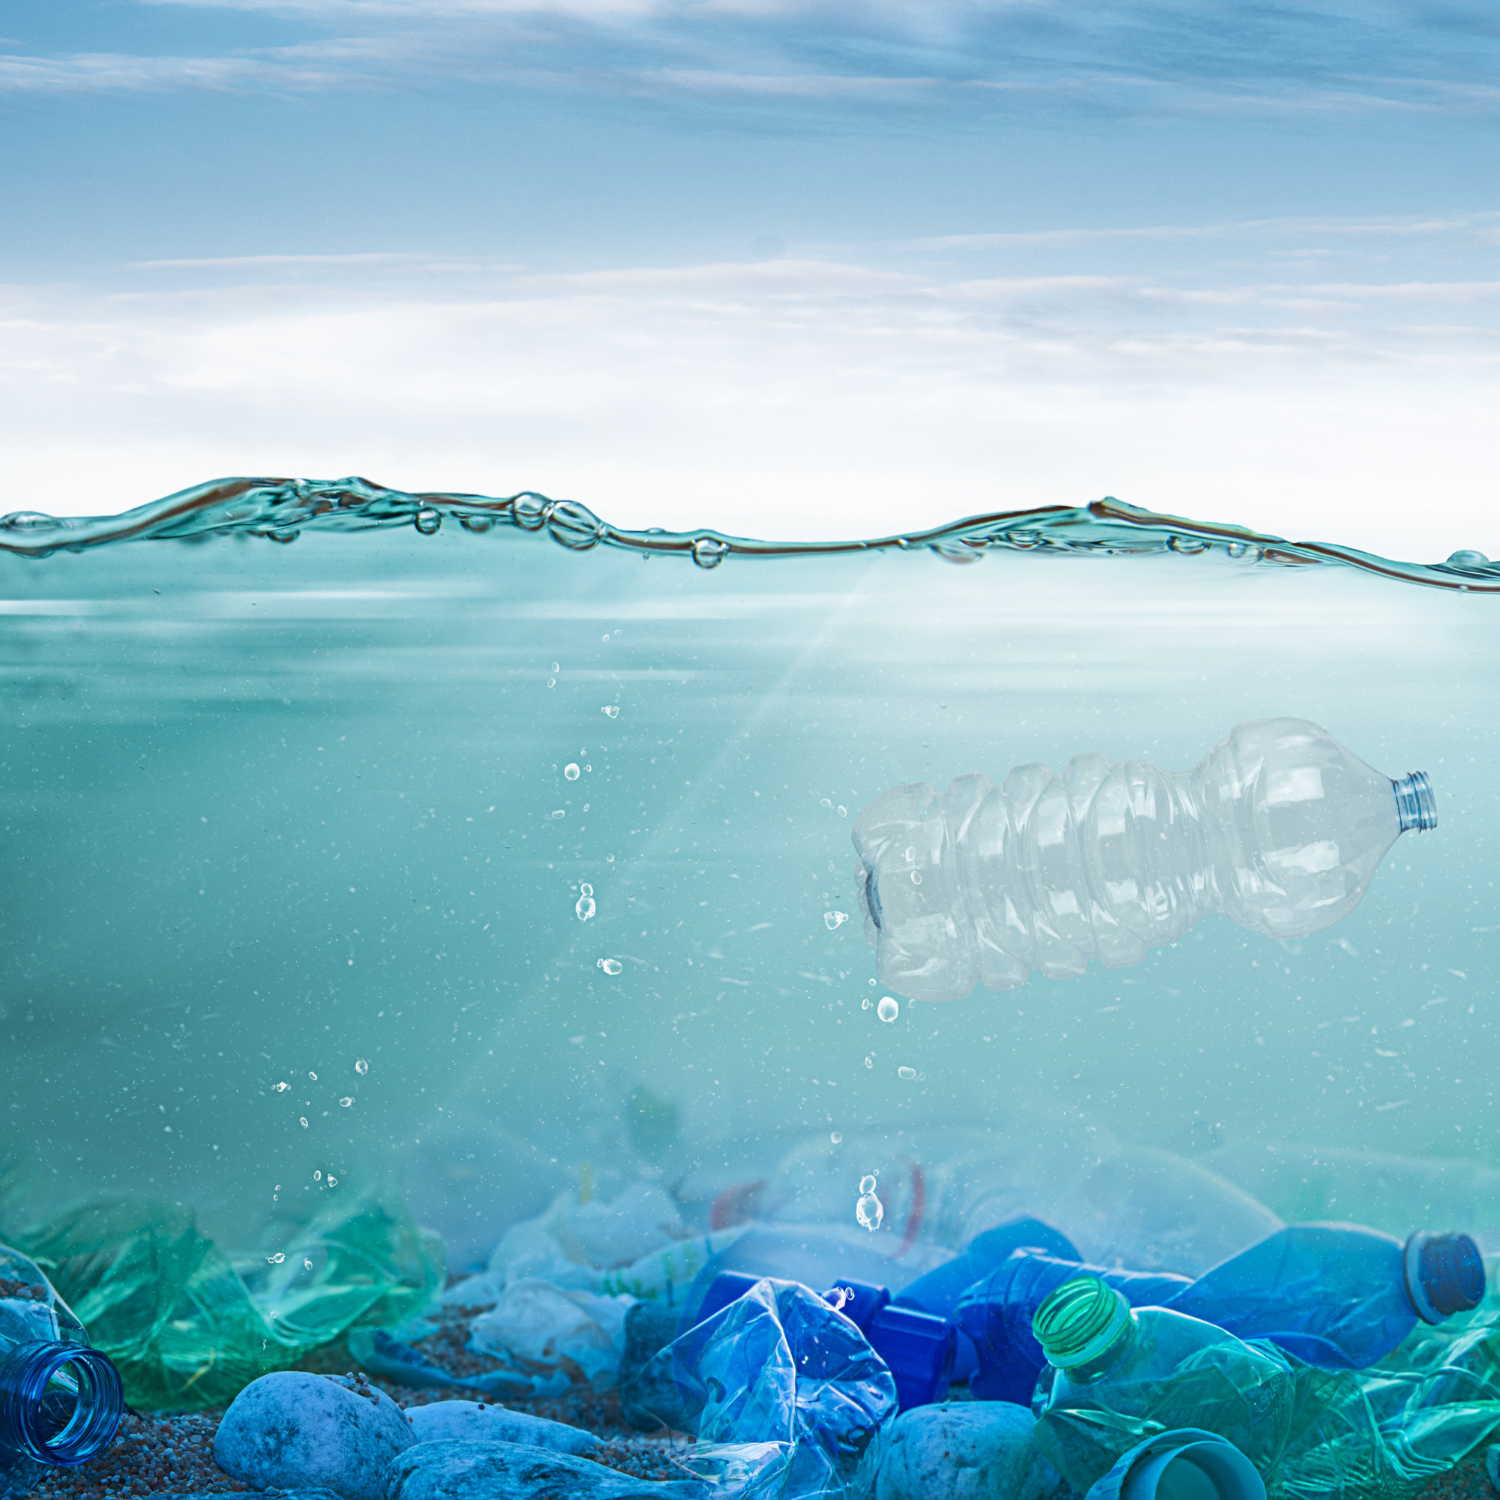 Plastic on the ocean floor